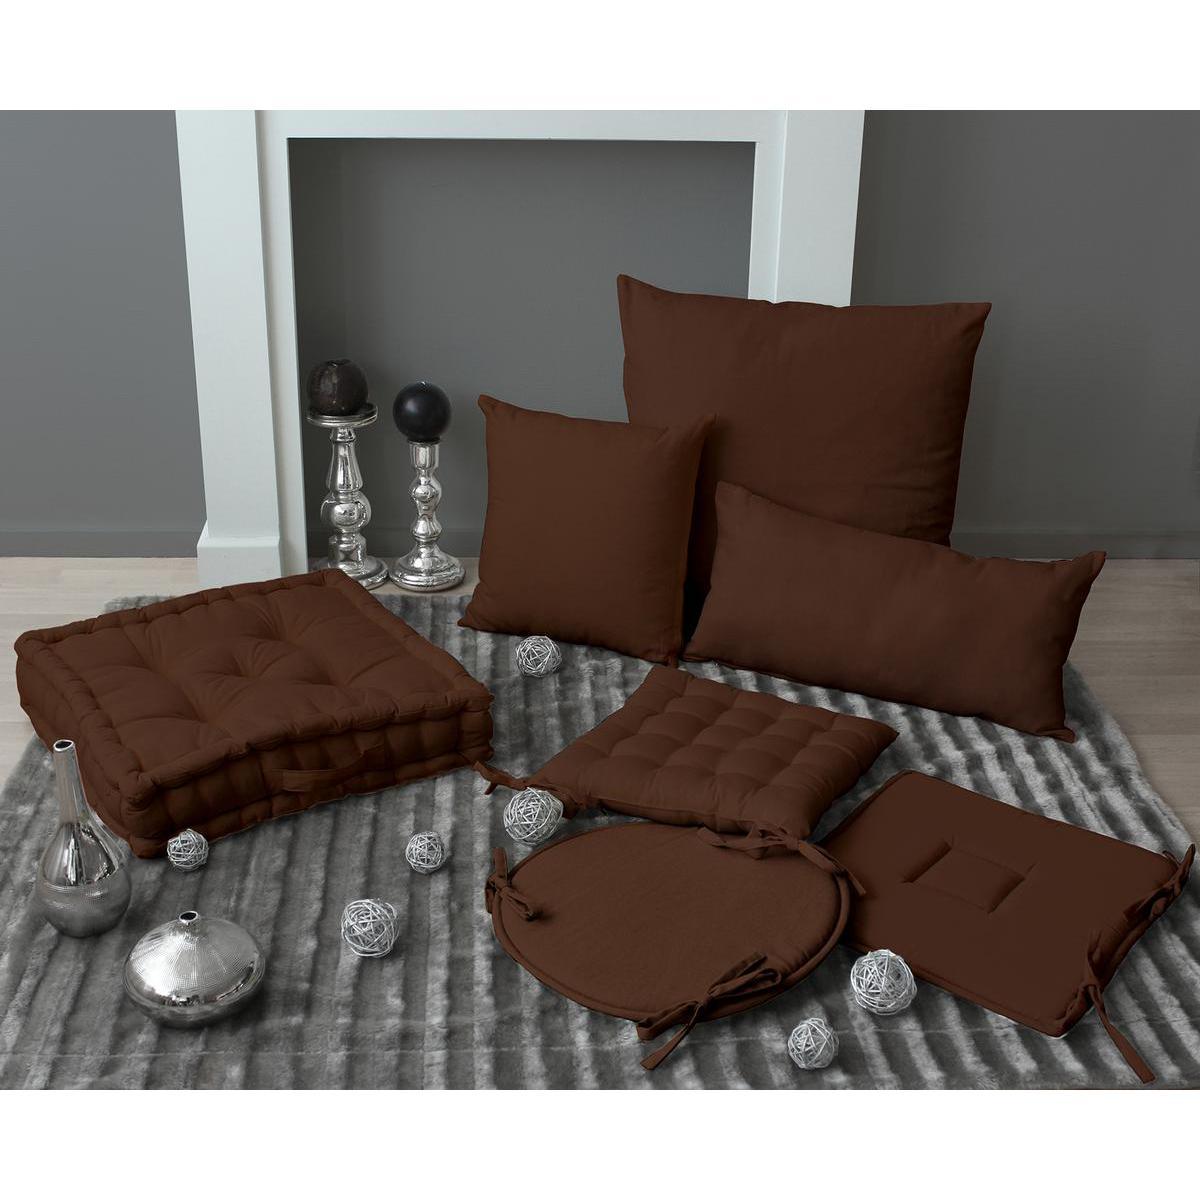 Galette de chaise - 100% coton - 40 x 40 cm - chocolat Marron